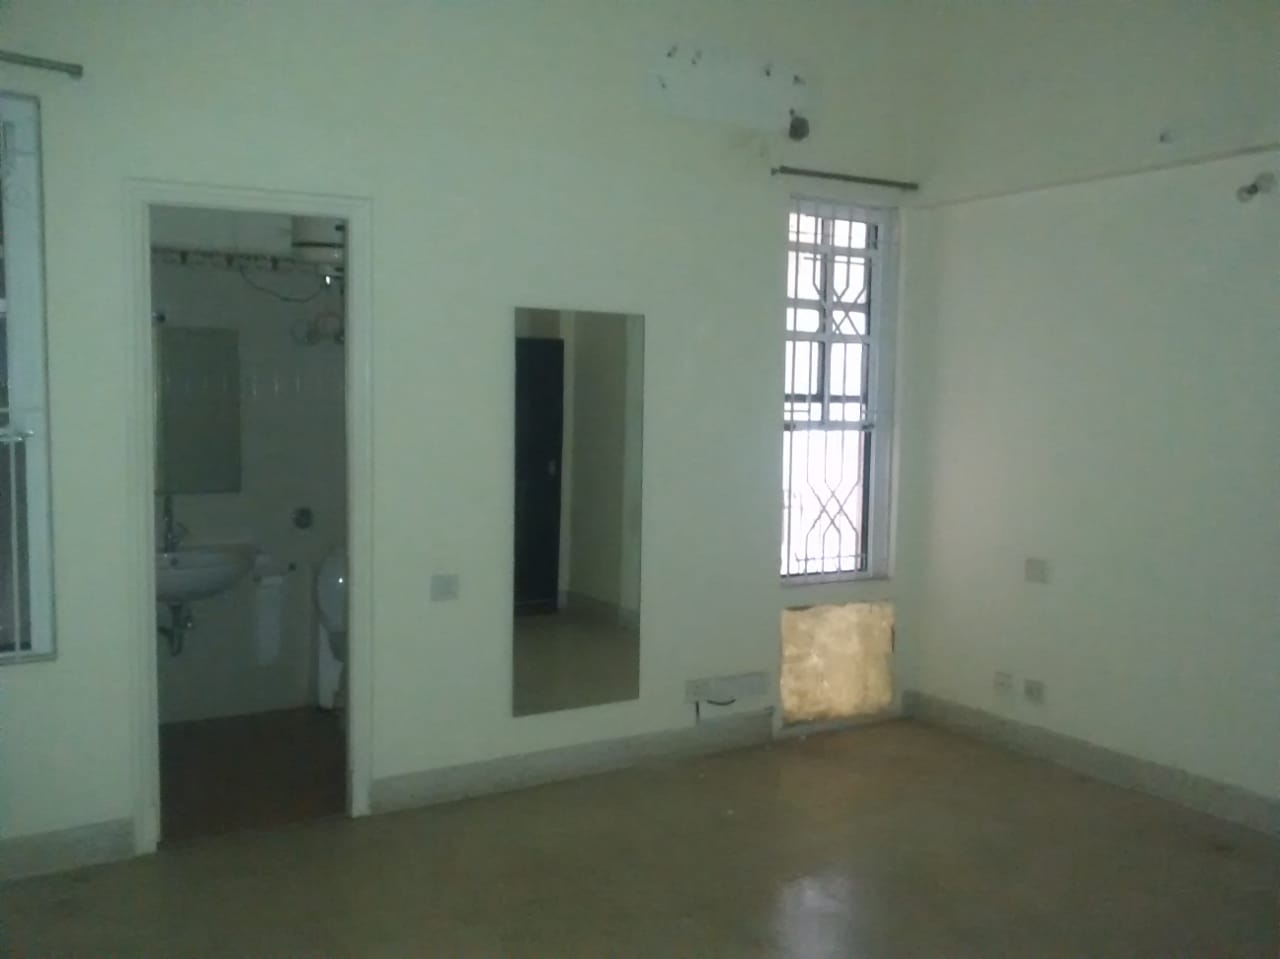 Ulsoor Road: Exclusive 3 bedroom flat for rent